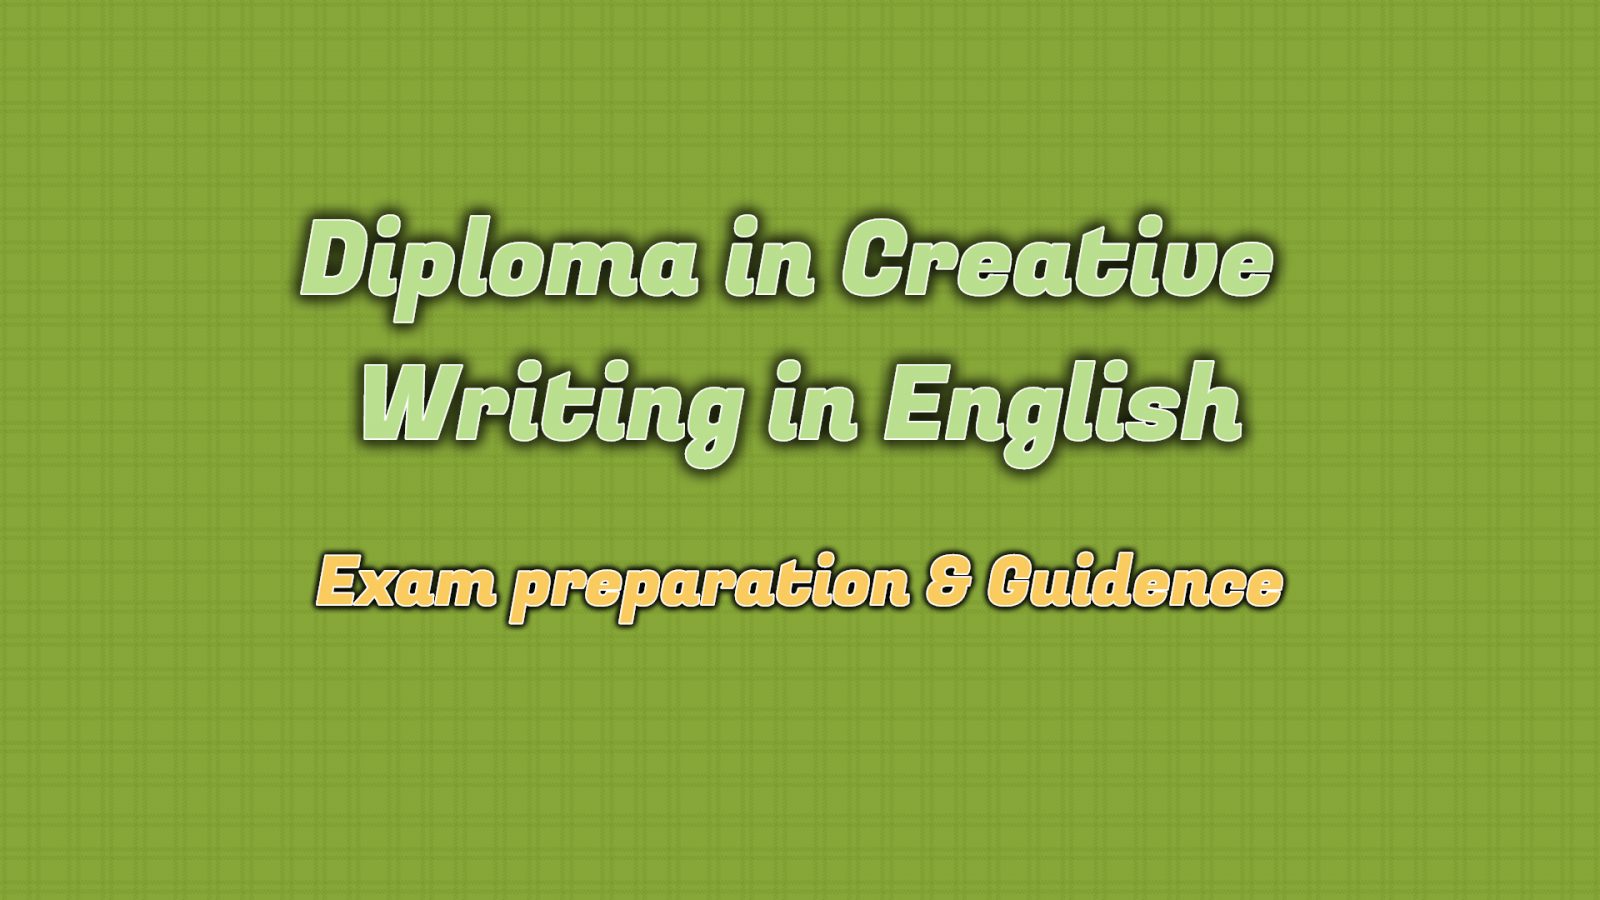 ignou diploma in creative writing in english